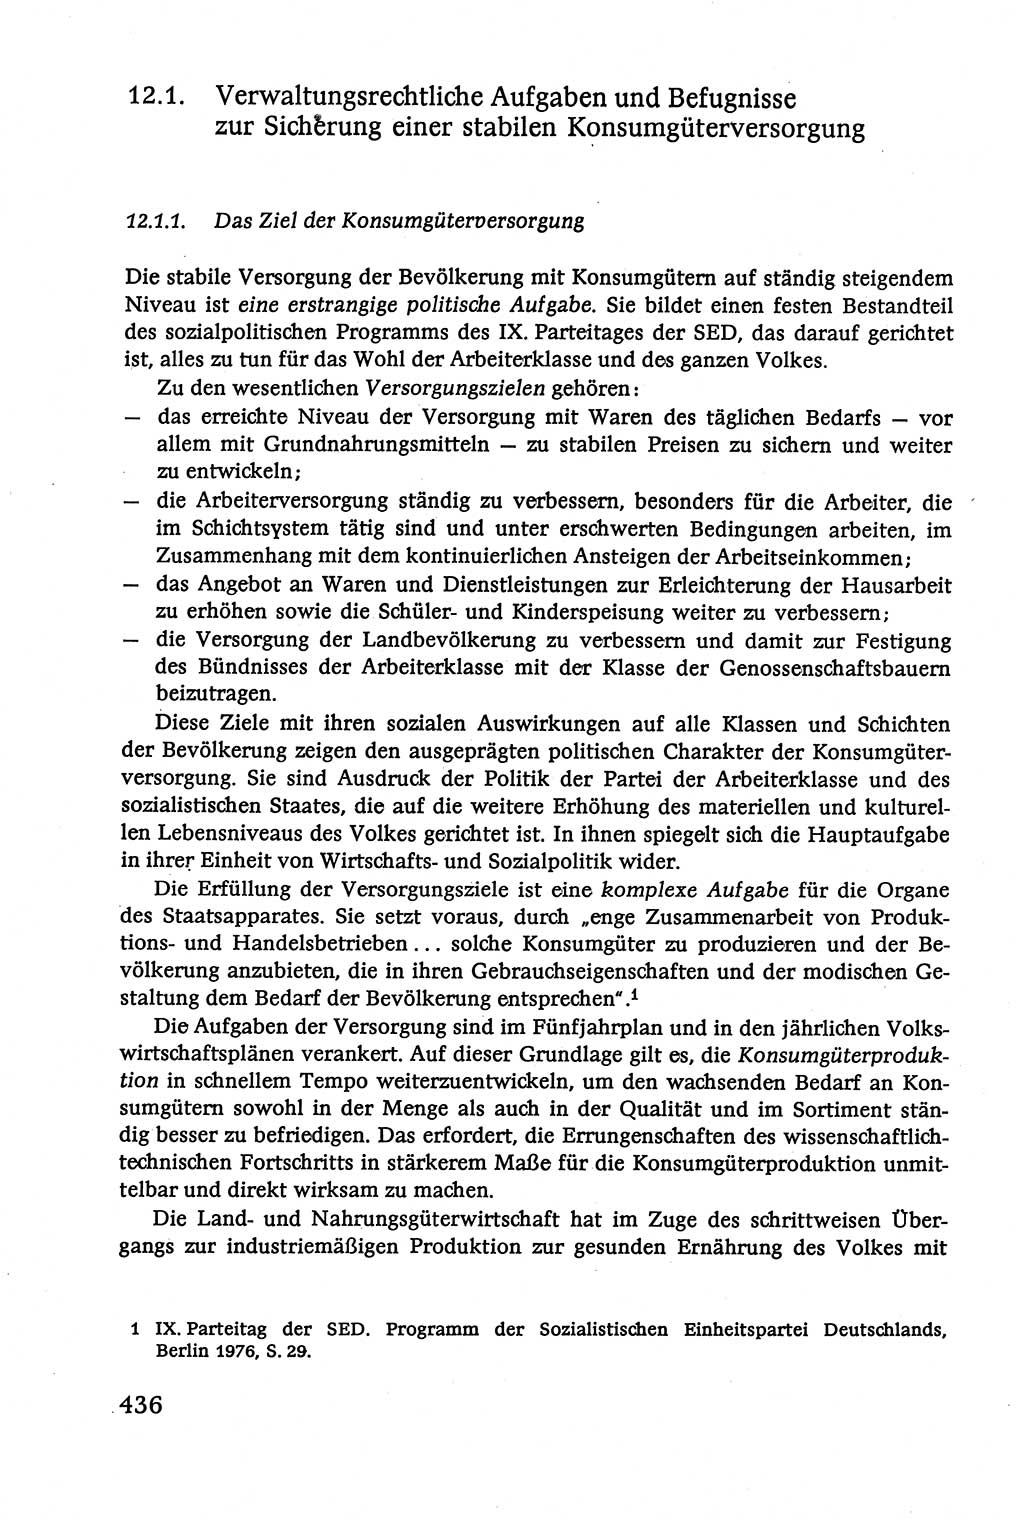 Verwaltungsrecht [Deutsche Demokratische Republik (DDR)], Lehrbuch 1979, Seite 436 (Verw.-R. DDR Lb. 1979, S. 436)